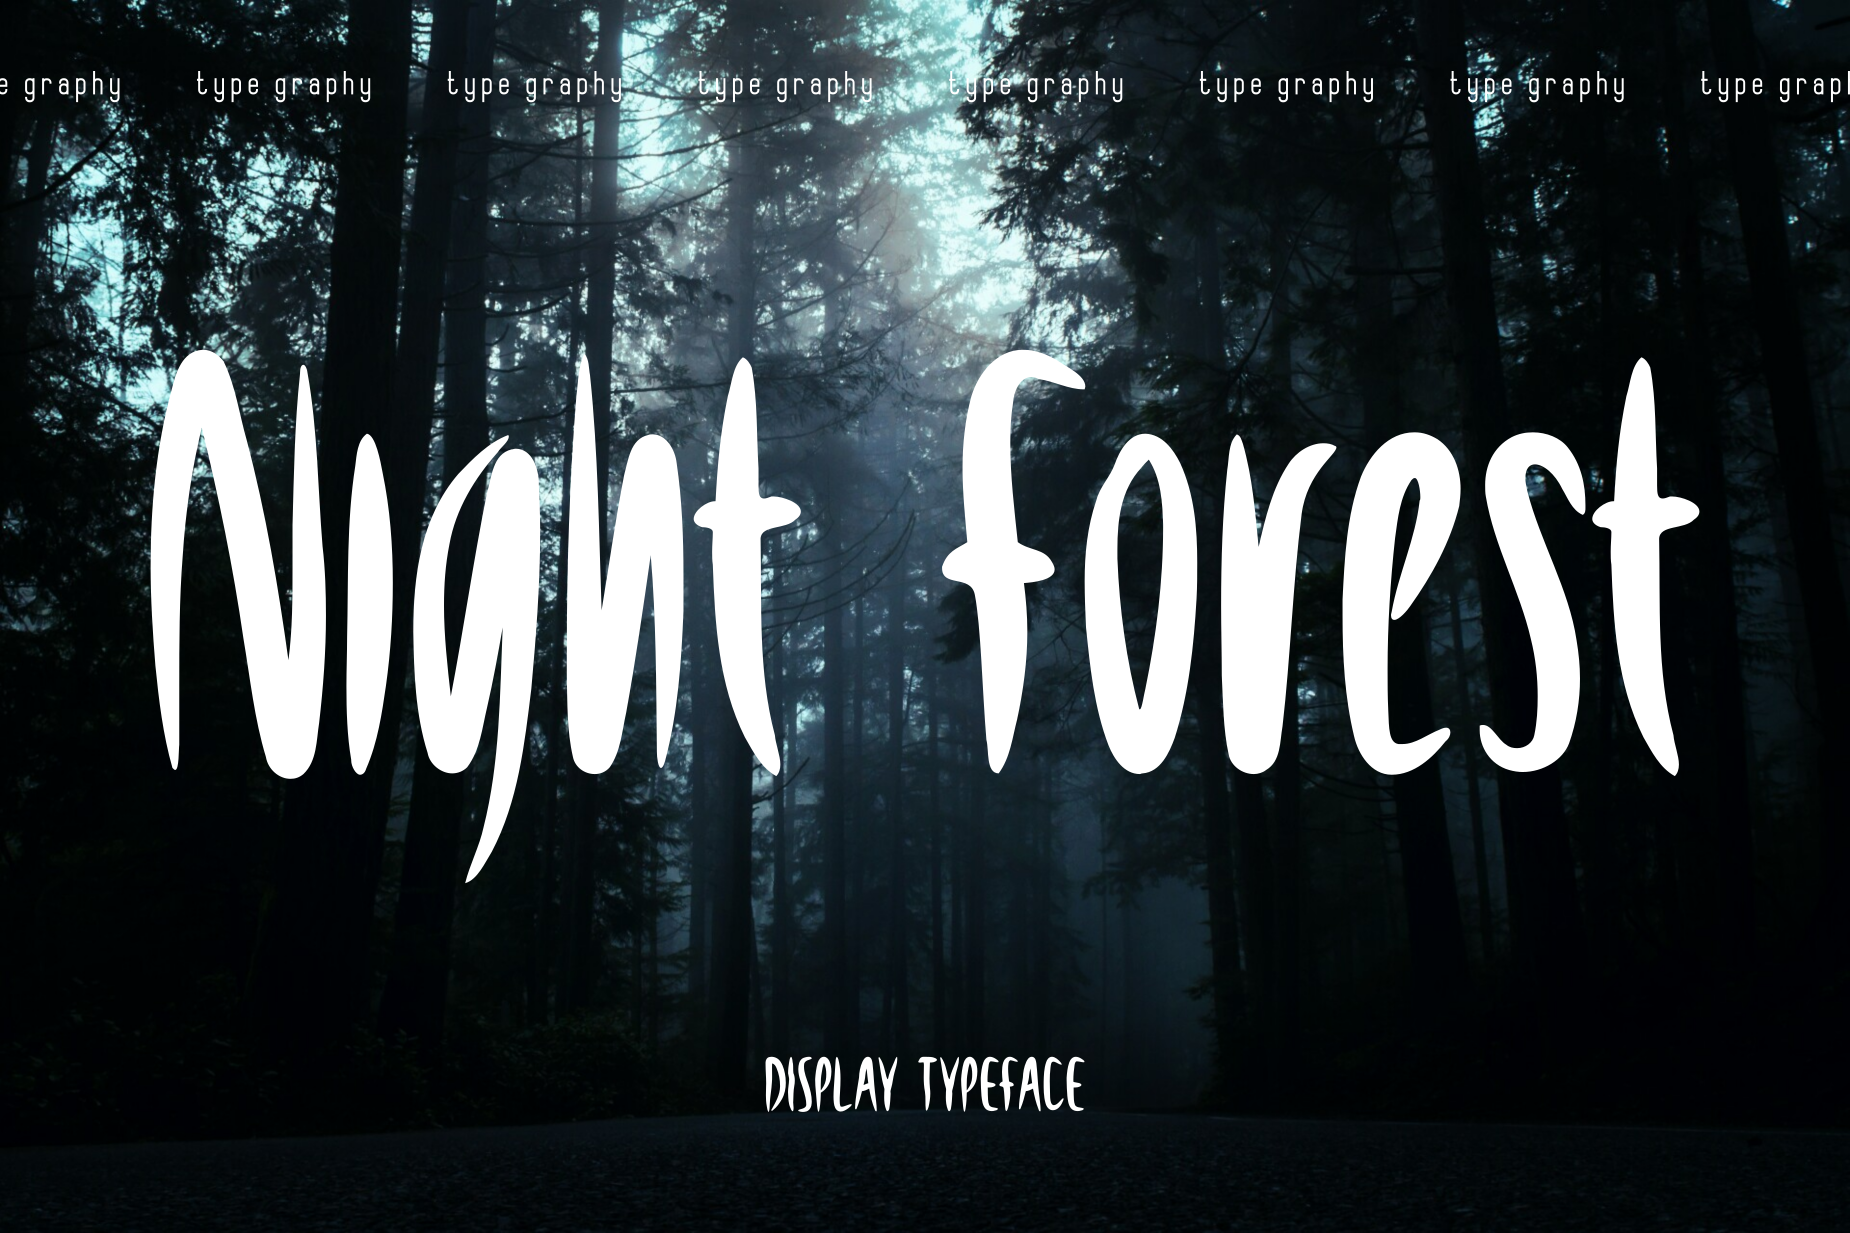 NightForest